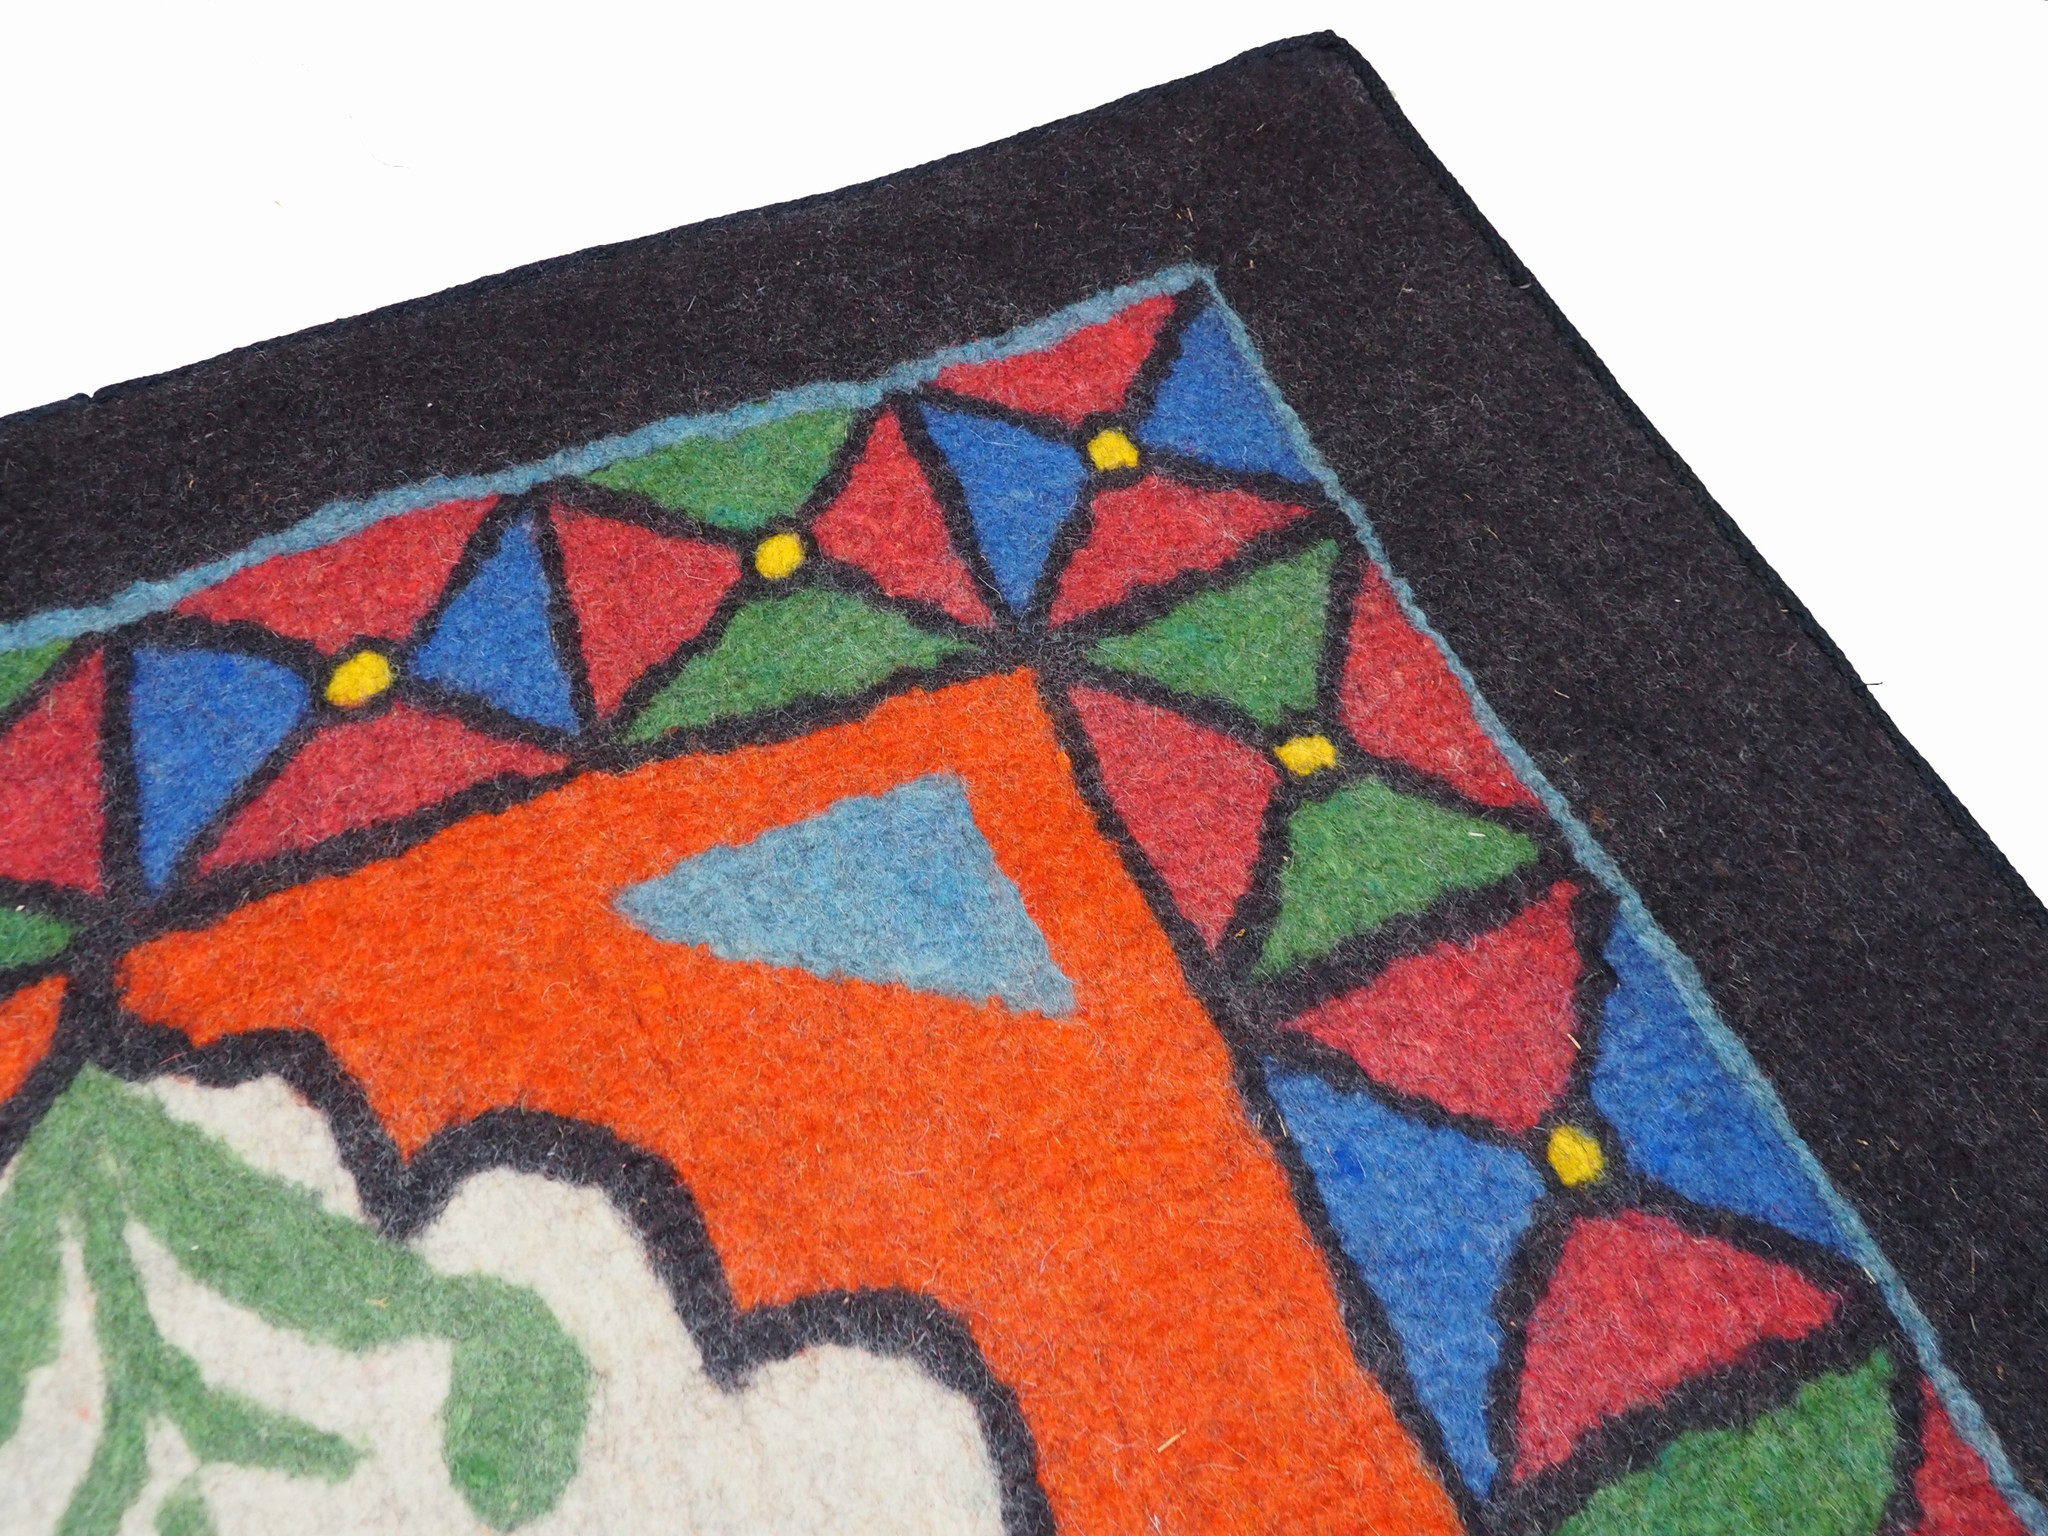 245x163 cm  tribal Nomadic Turkmen nomads Vintage felt rug rug from Afghanistan feltrug carpet shyrdak No-699